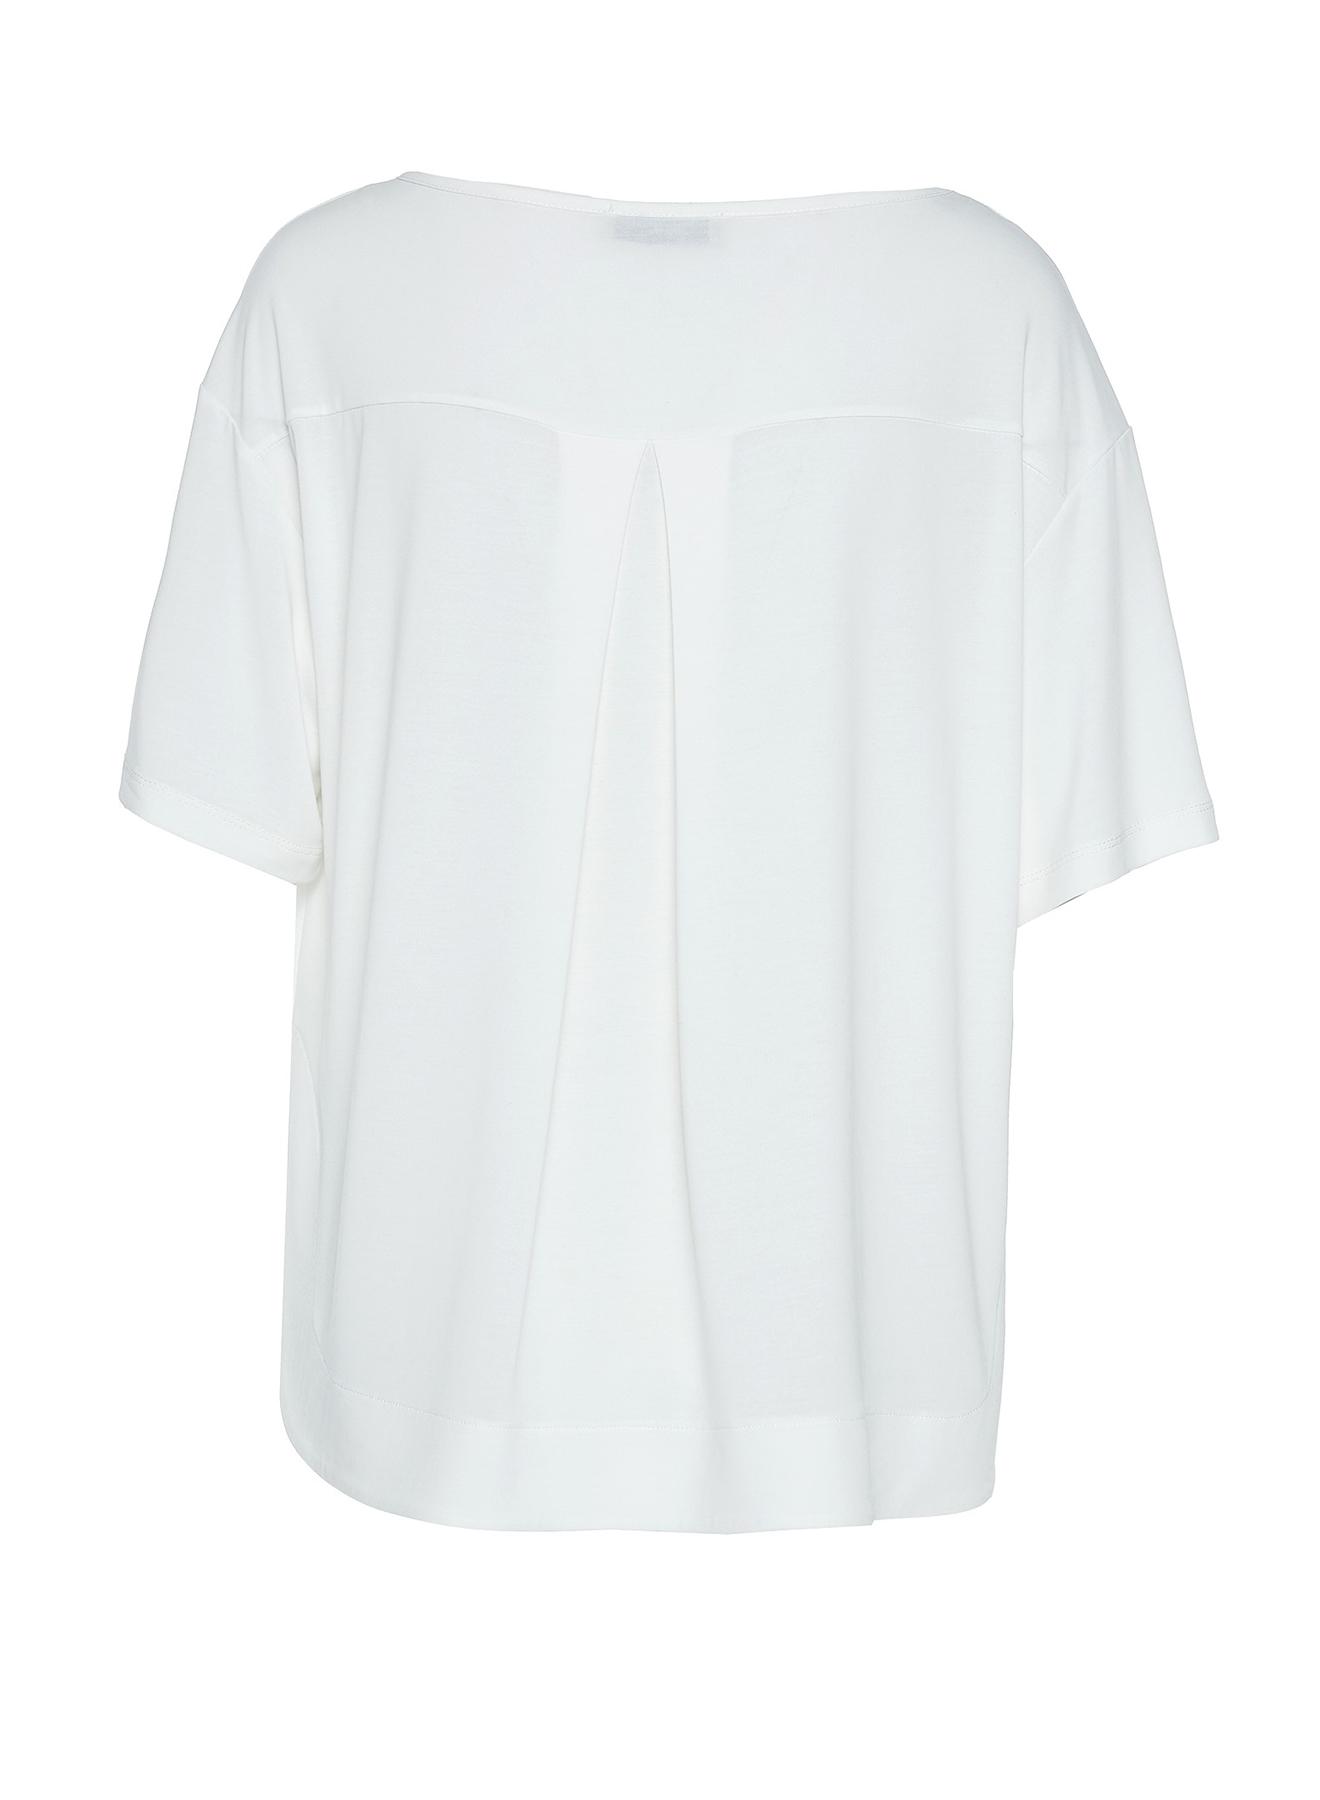 Λευκή βαμβακερή Μπλούζα με κοντά μανίκια Milla - 2